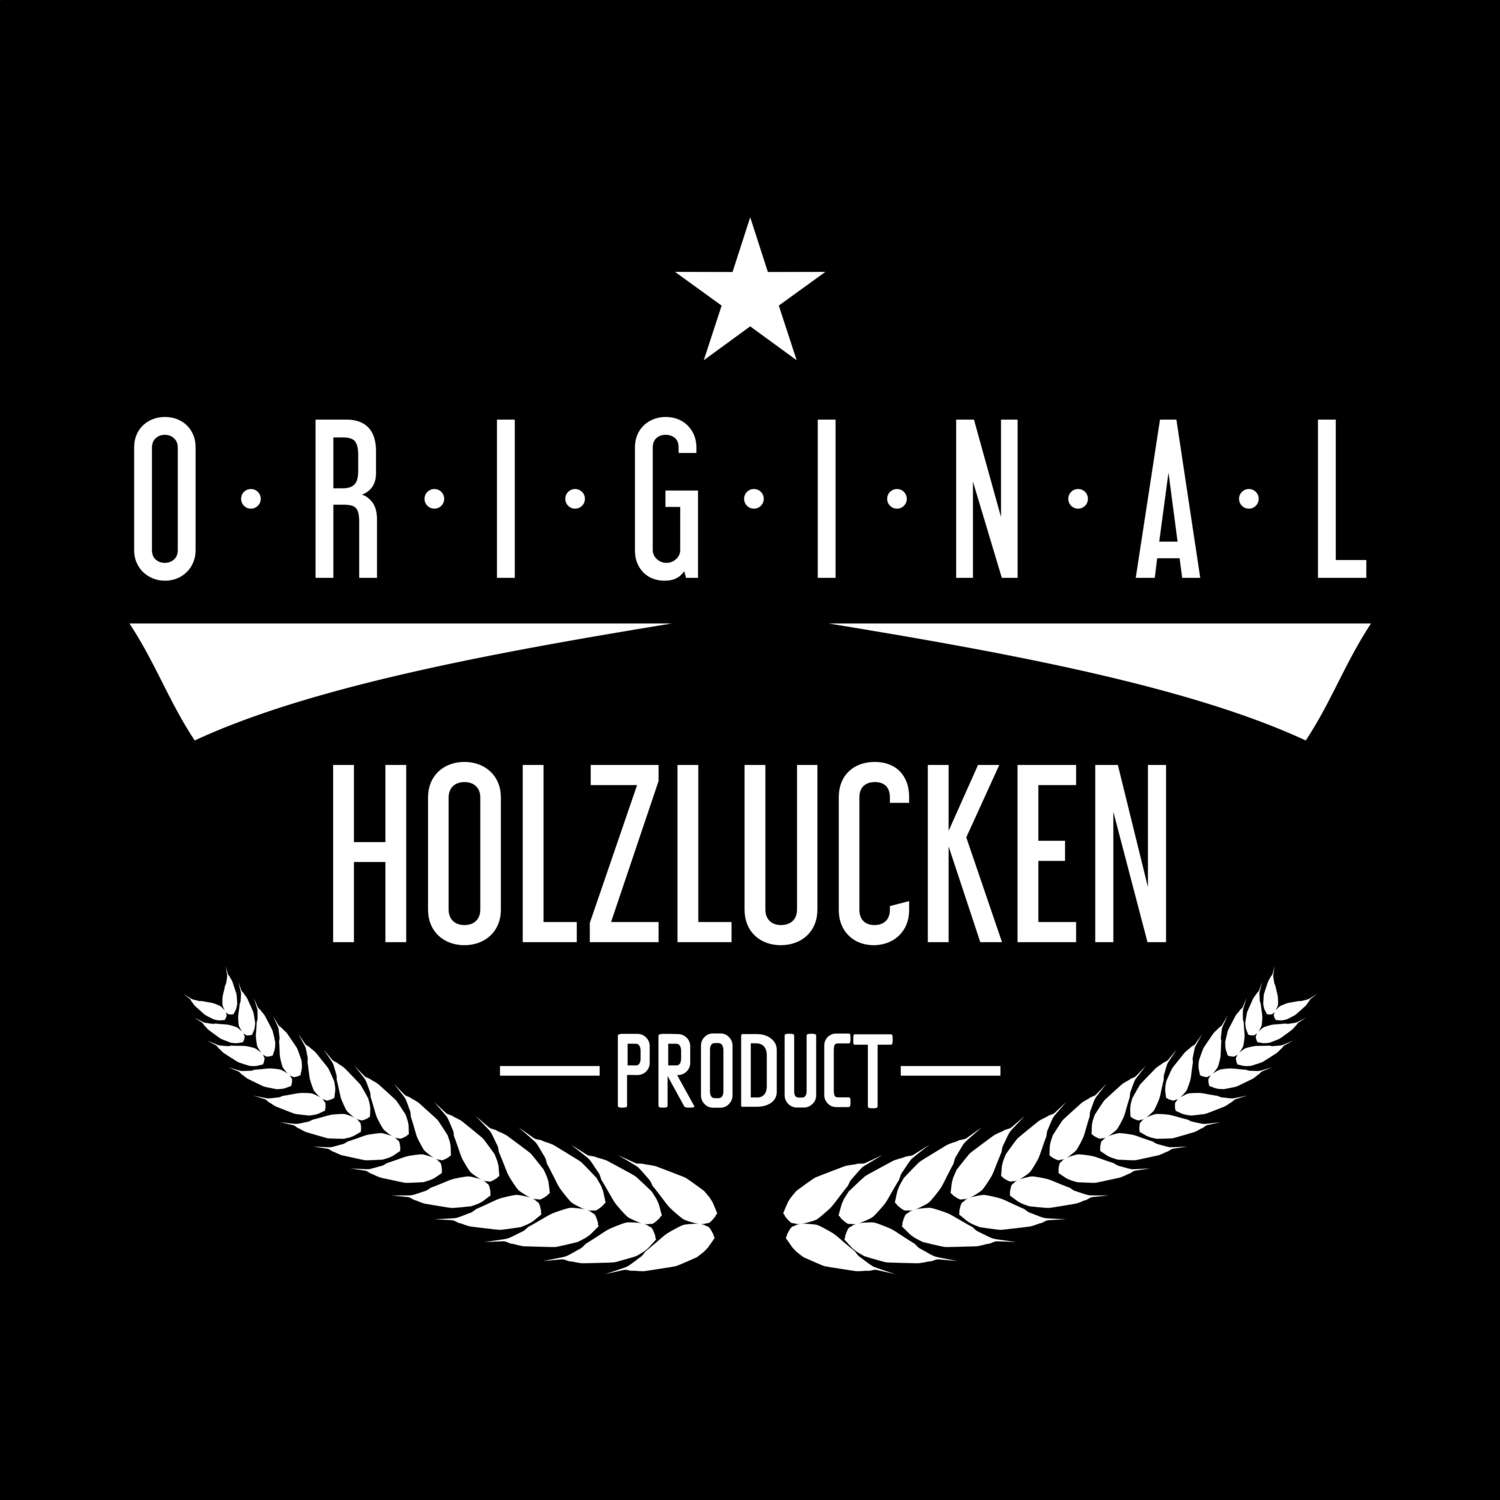 Holzlucken T-Shirt »Original Product«